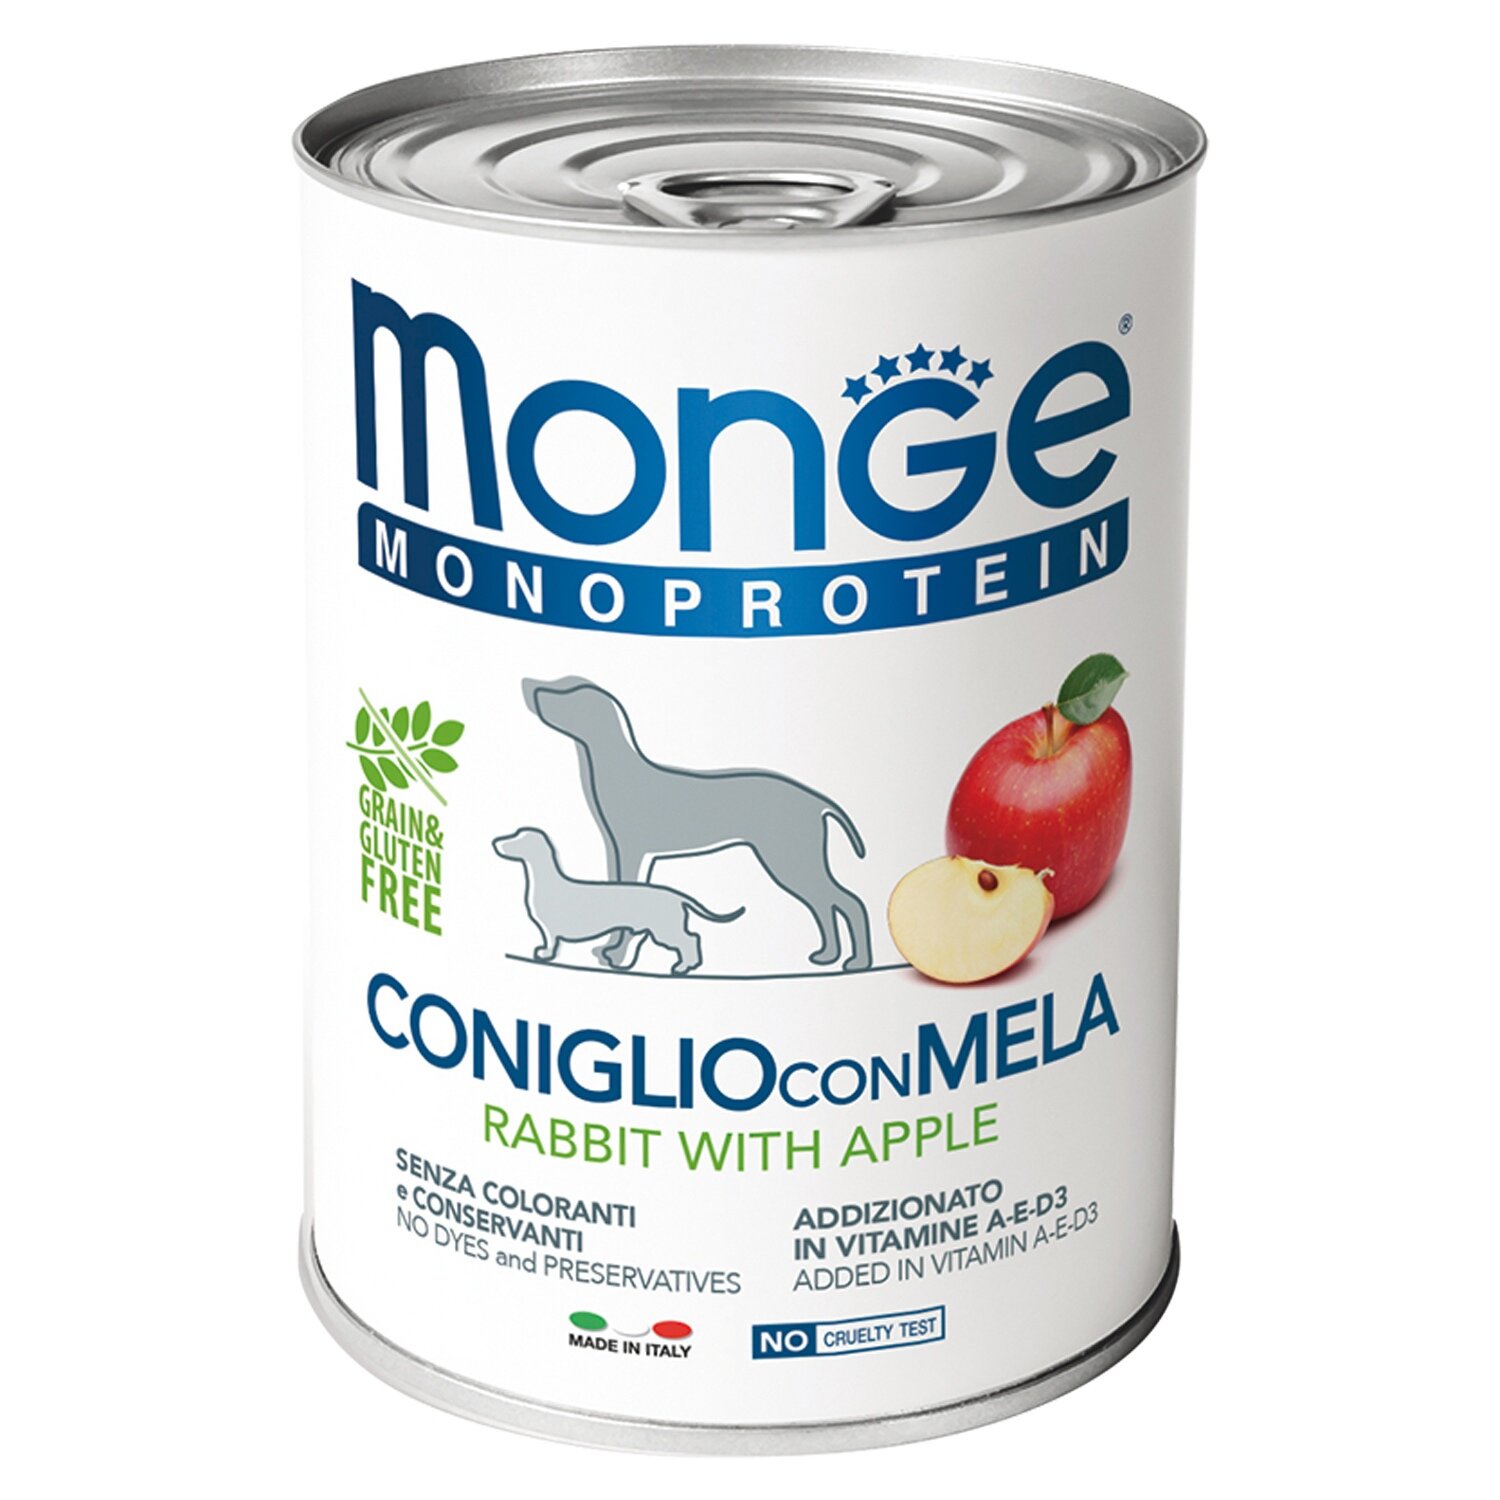 Monge Dog Monoprotein Fruits Влажный корм для собак, Кролик, Рис и Яблоки 0.4кг